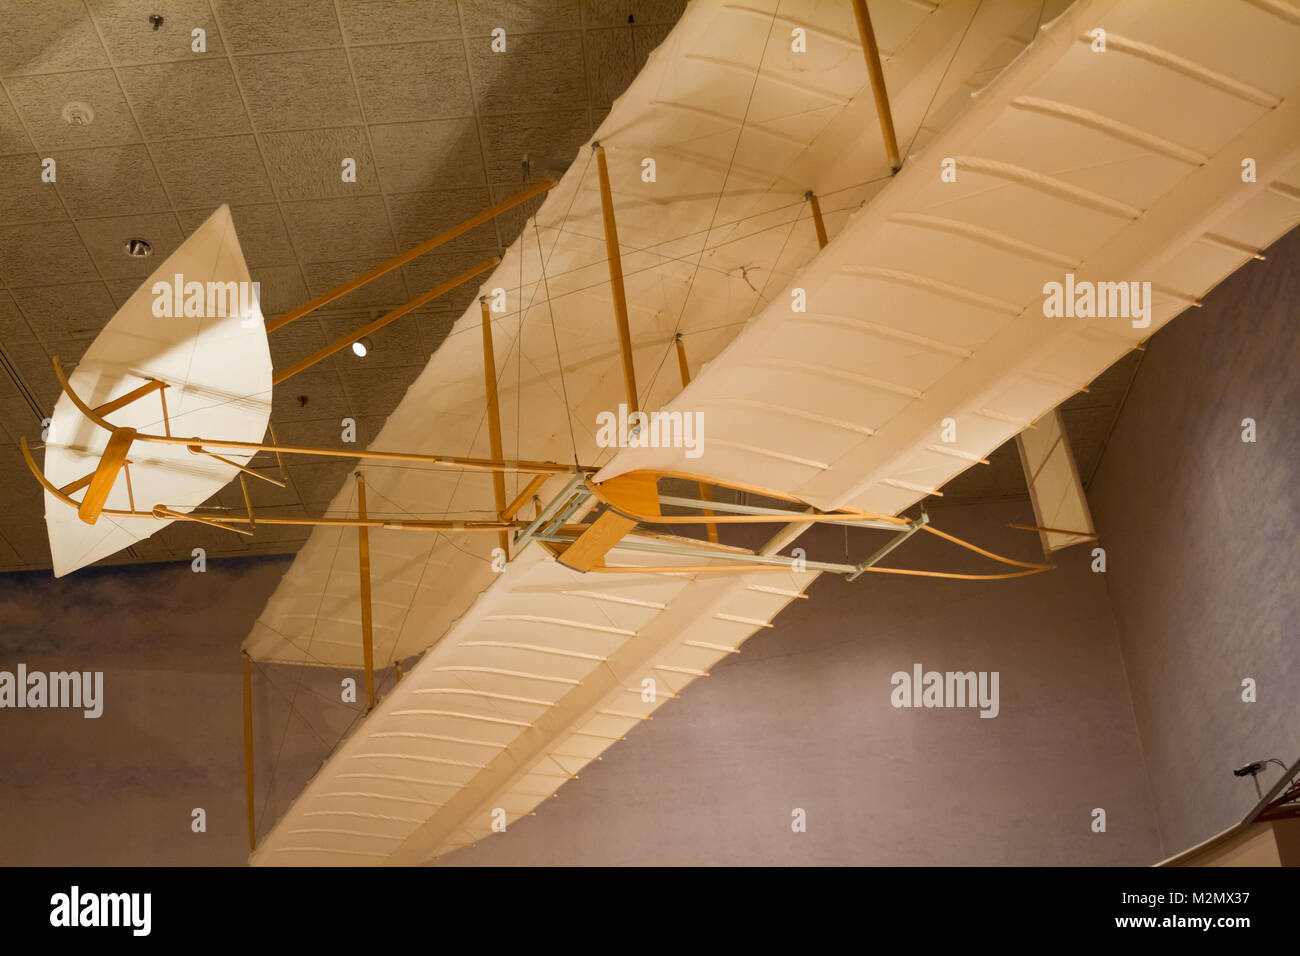 WASHINGTON D.C., États-Unis - 11 MAI 2016 : Frères Wright 1902 Glider au National Air and Space Museum de Washington, D.C., Smithsonian Institution Banque D'Images